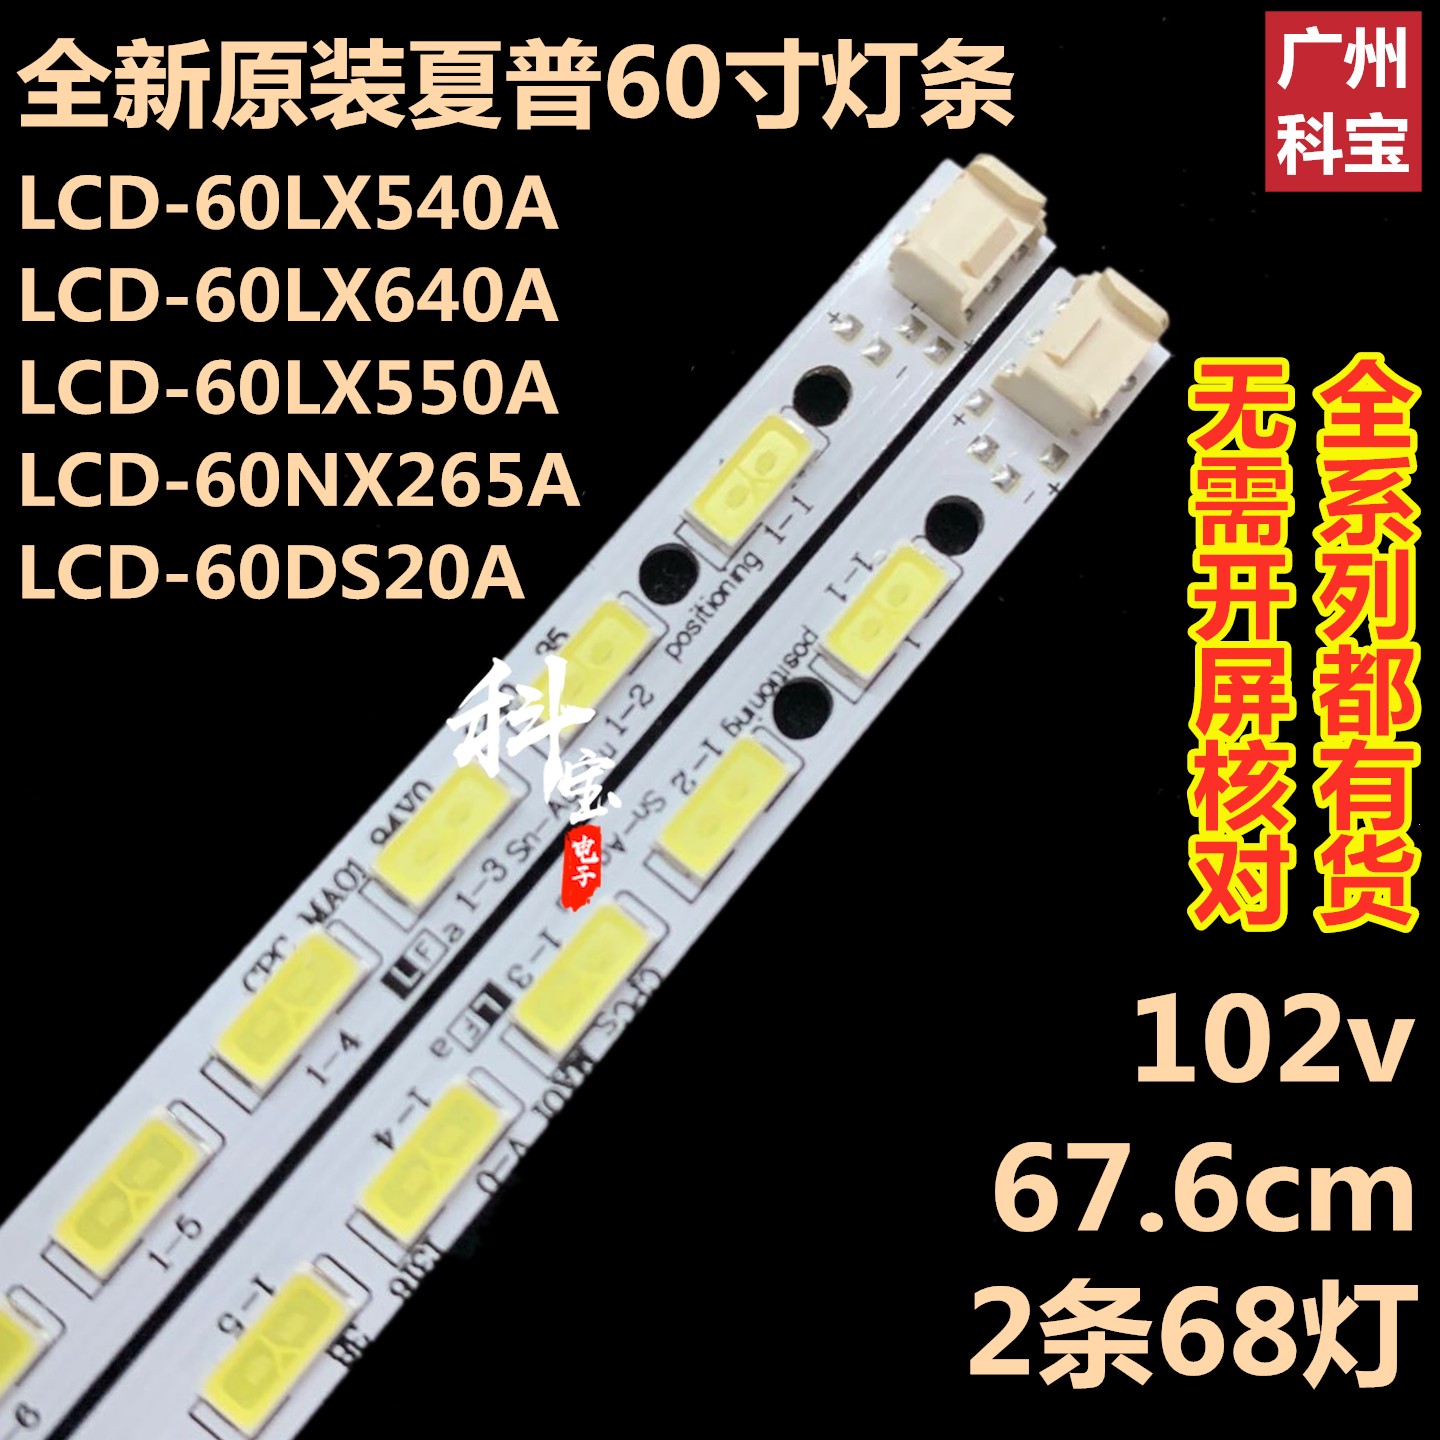 夏普LCD-60LX540A背光LED灯条